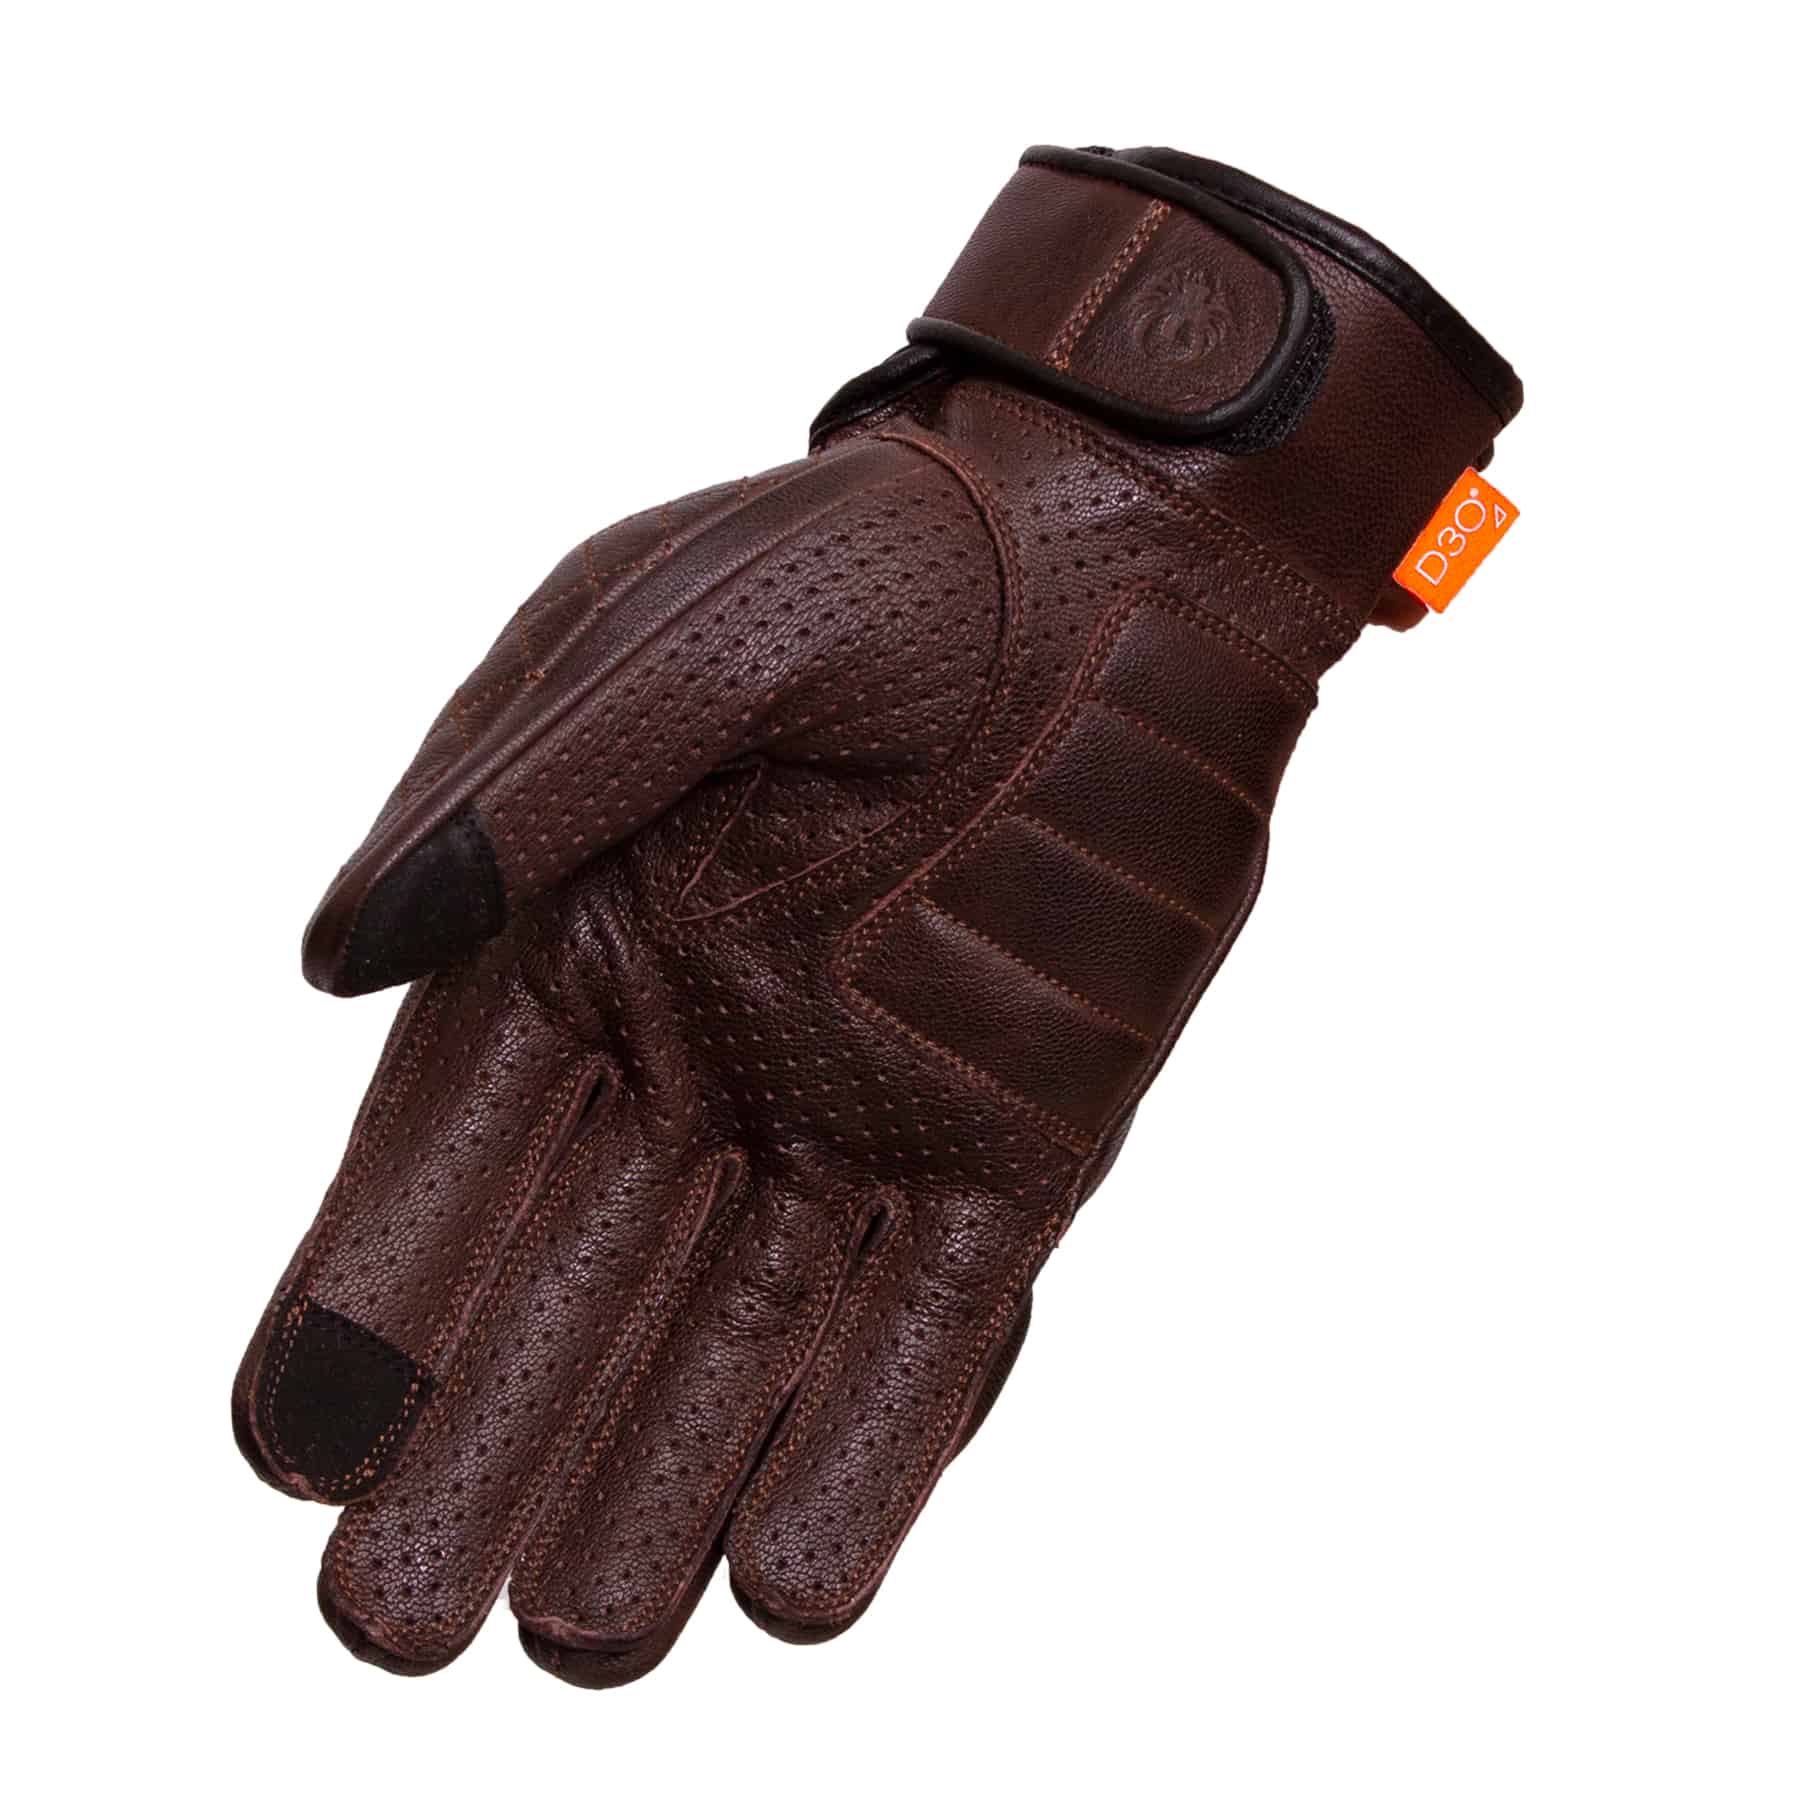 Merlin Clanstone glove brown